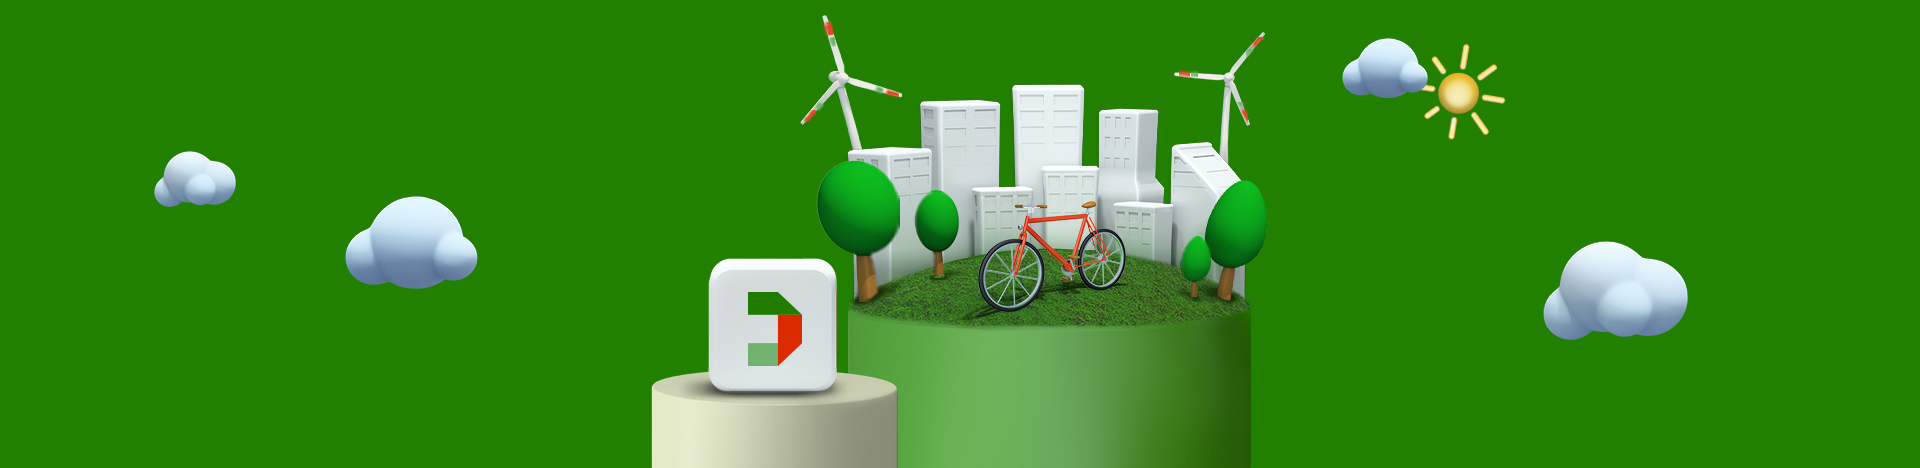 Disegno 3D che rappresenta una città sostenibile con in primo piano una bicicletta, le pale eoliche e il pittogramma di Fideuram Direct